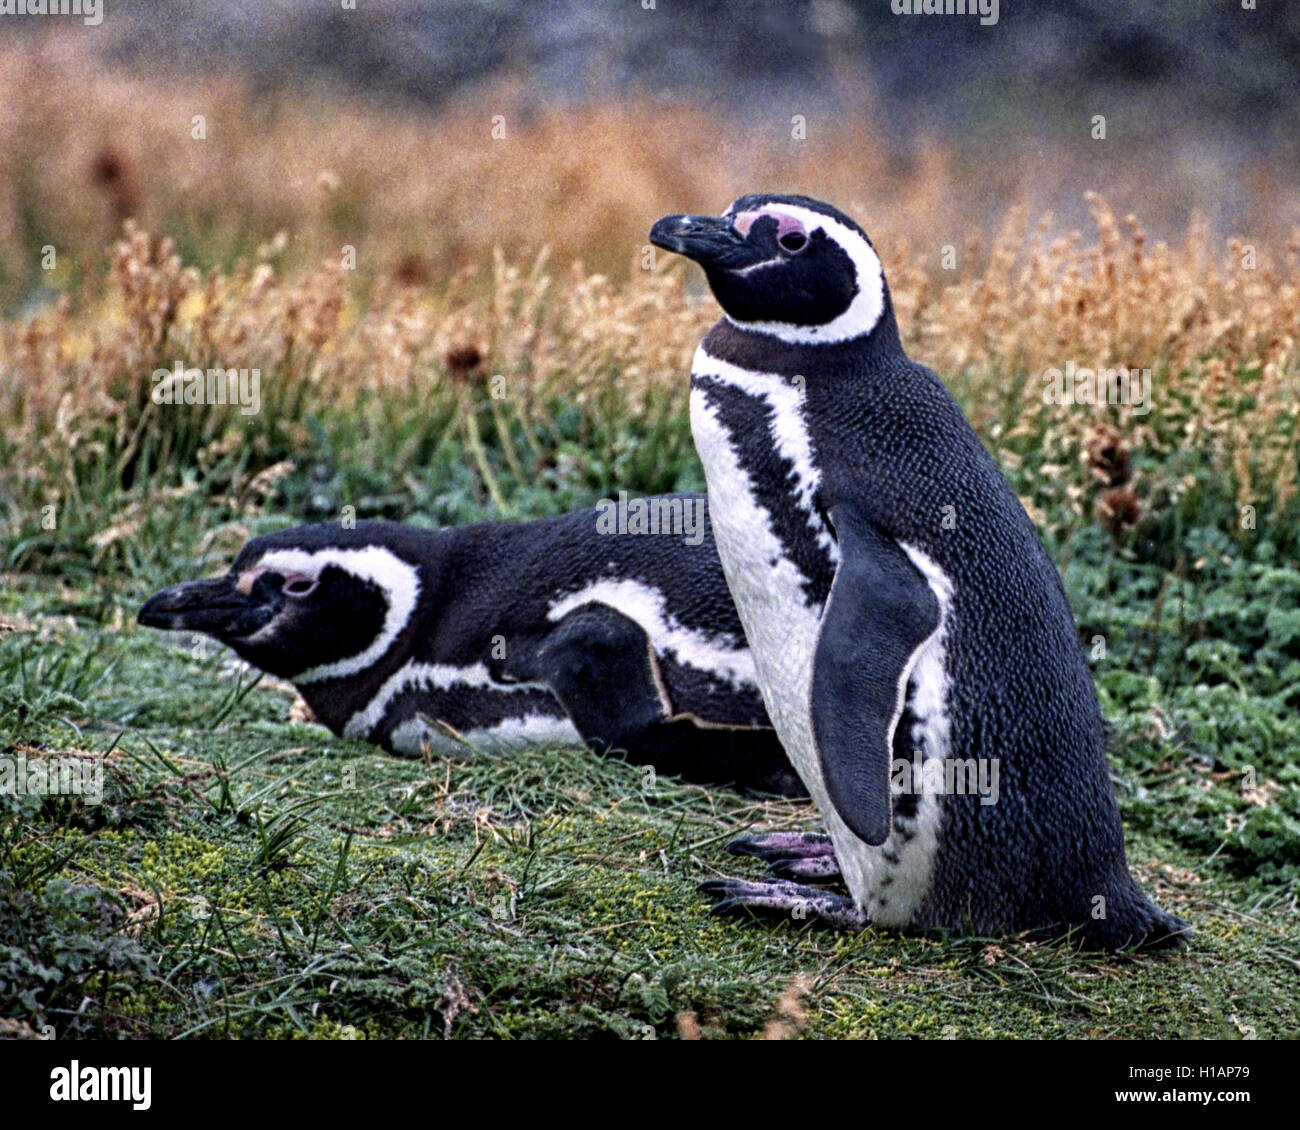 Febrero 22, 2003 - Región de Magallanes, Chile - un par de pingüinos de Magallanes (Spheniscus magellanicus) en la Reserva Pingüino Otway Sound en Chile, a 40 millas (65km) de la ciudad de Punta Arenas. Una popular atracción turística, los pingüinos volver allí cada año para la época de apareamiento. Fueron nombradas después de explorador portugués Fernando de Magallanes, quien descubrió a los pájaros en 1520. (Crédito de la Imagen: © Arnold Drapkin via ZUMA Wire) Foto de stock